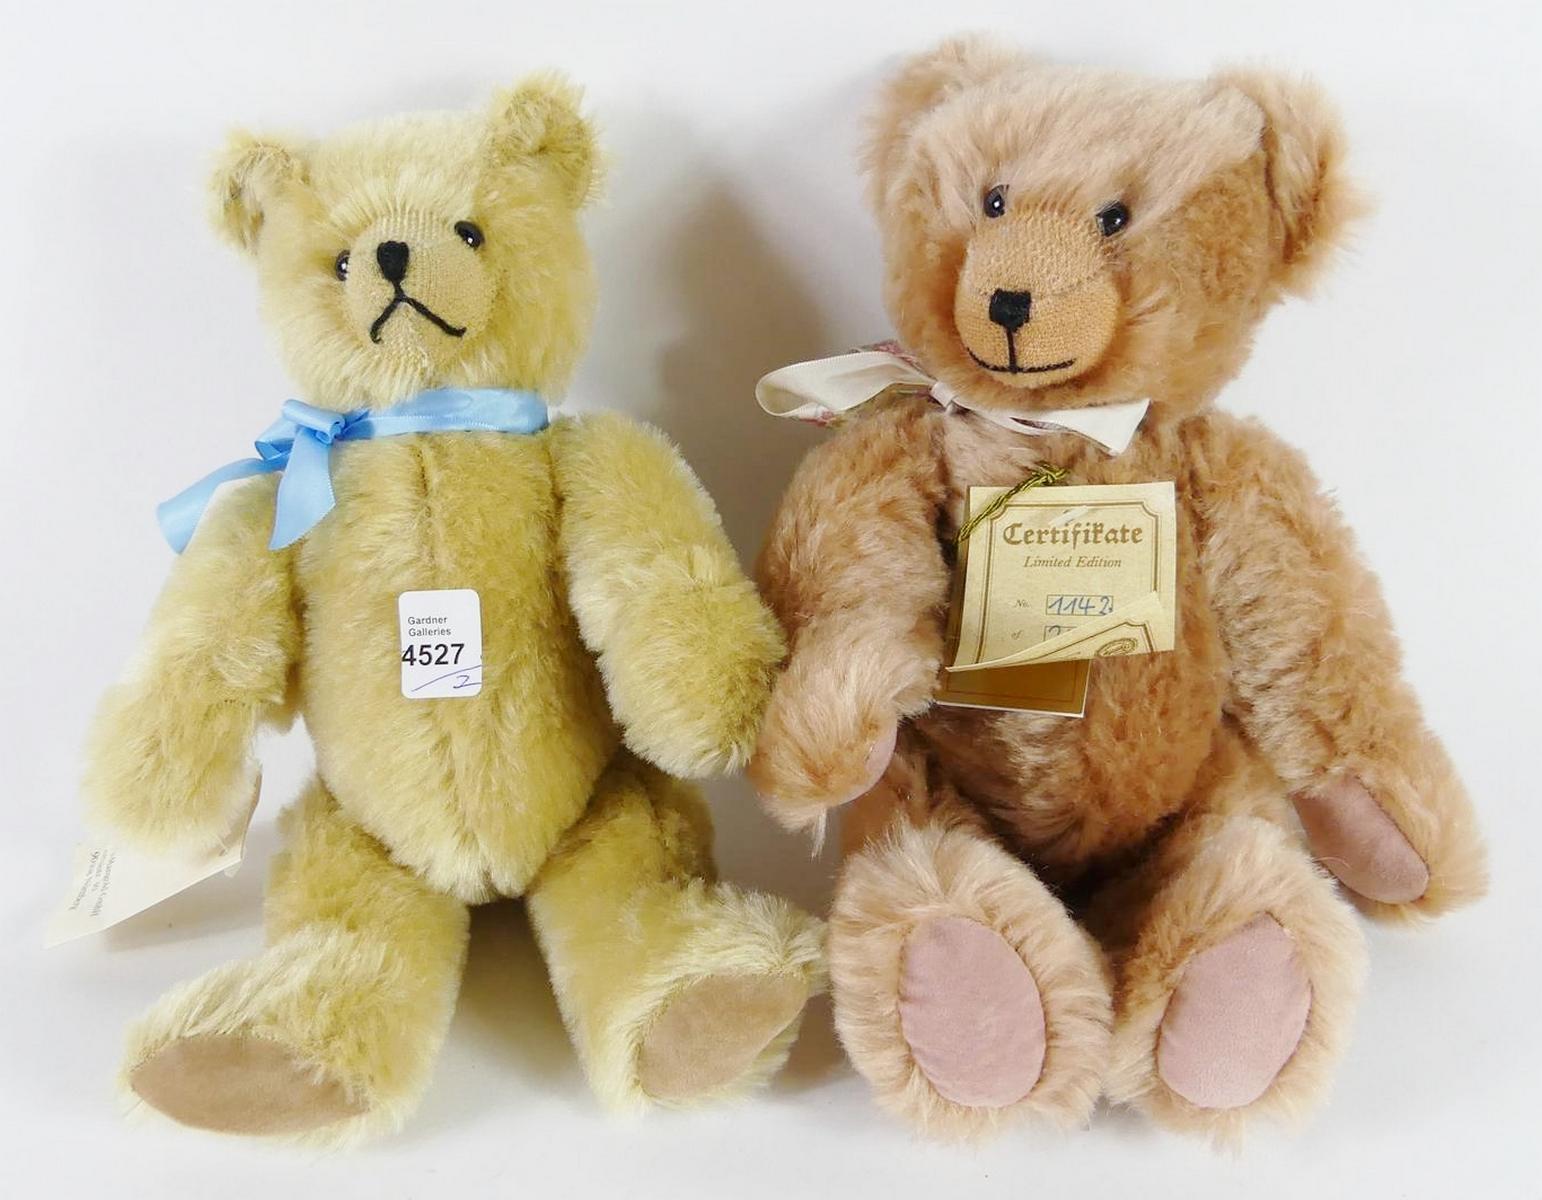 SCHUCO & HERMANN TEDDY BEARS